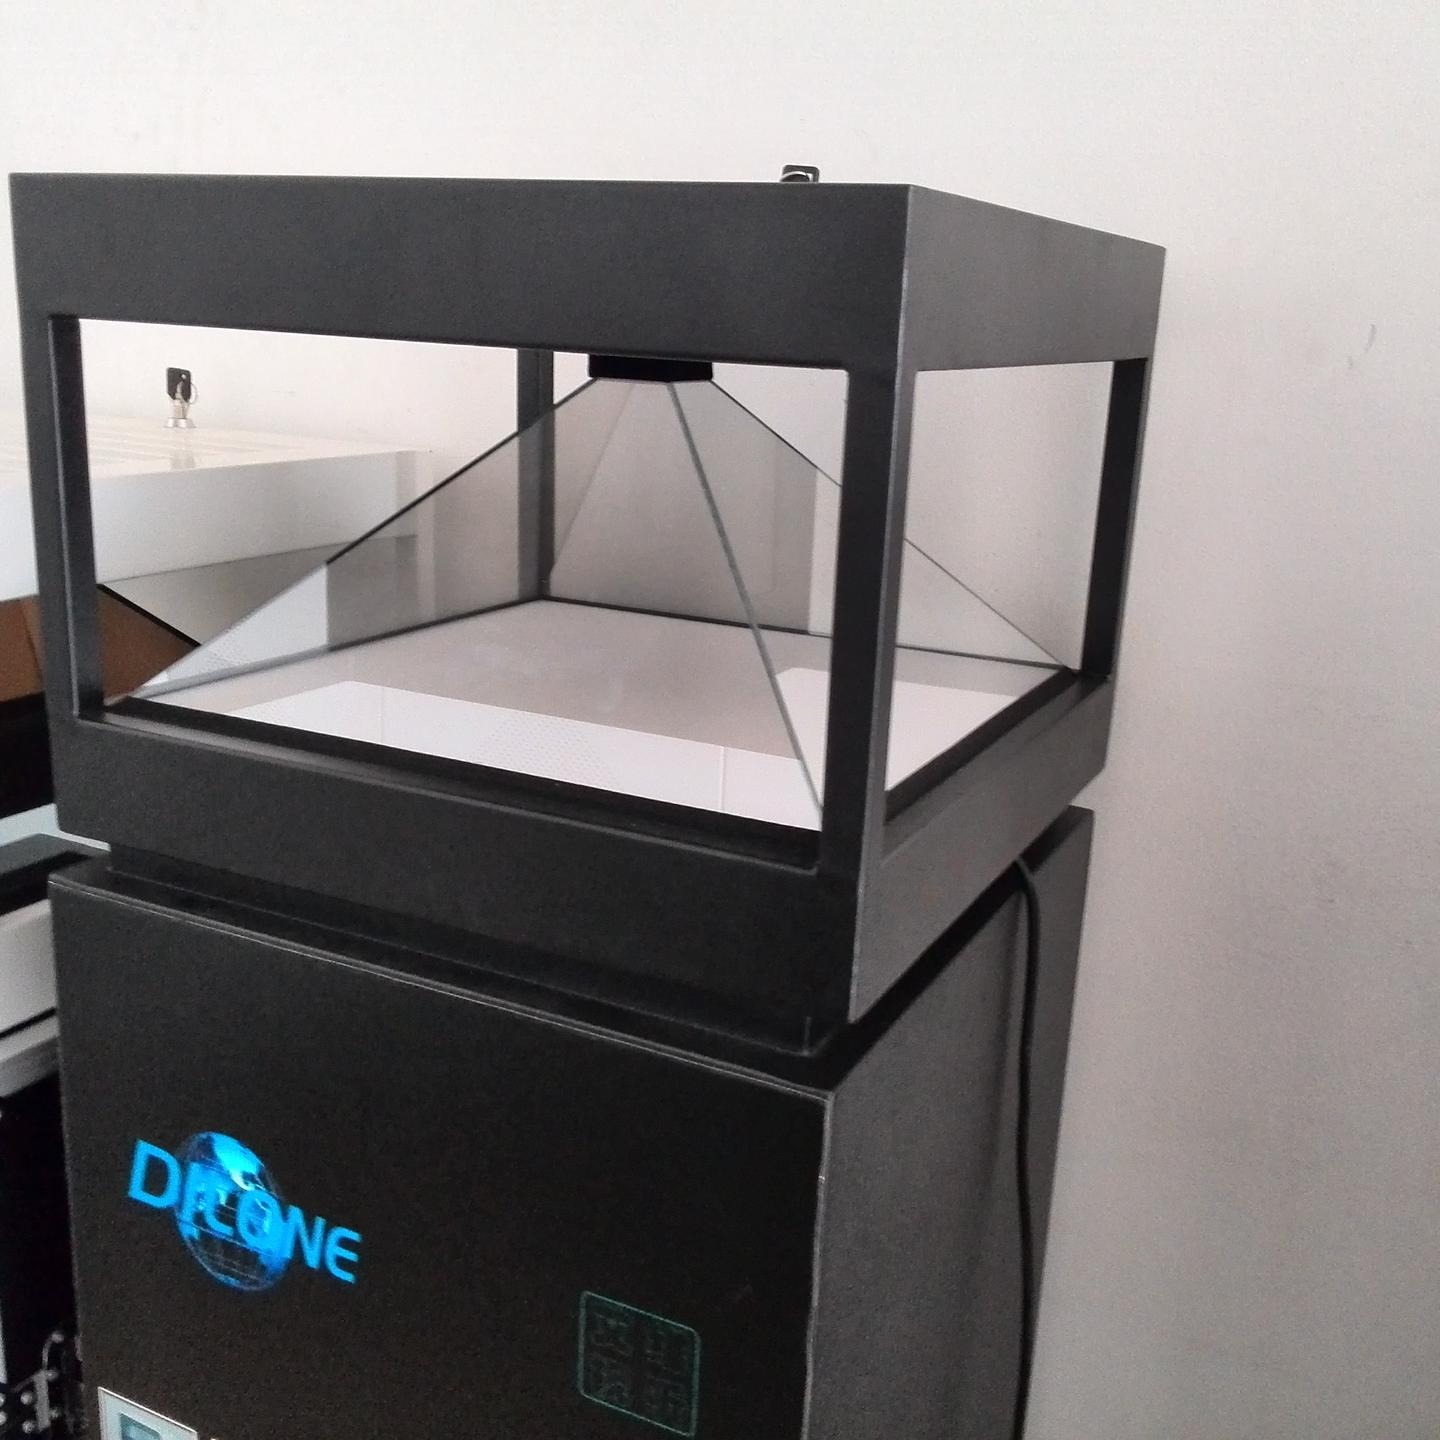 深圳工厂DILONE全息3D展示柜 立体成像 3D全息投影 裸眼立体 化妆品展示柜 全息投影展柜广告机 全息设备